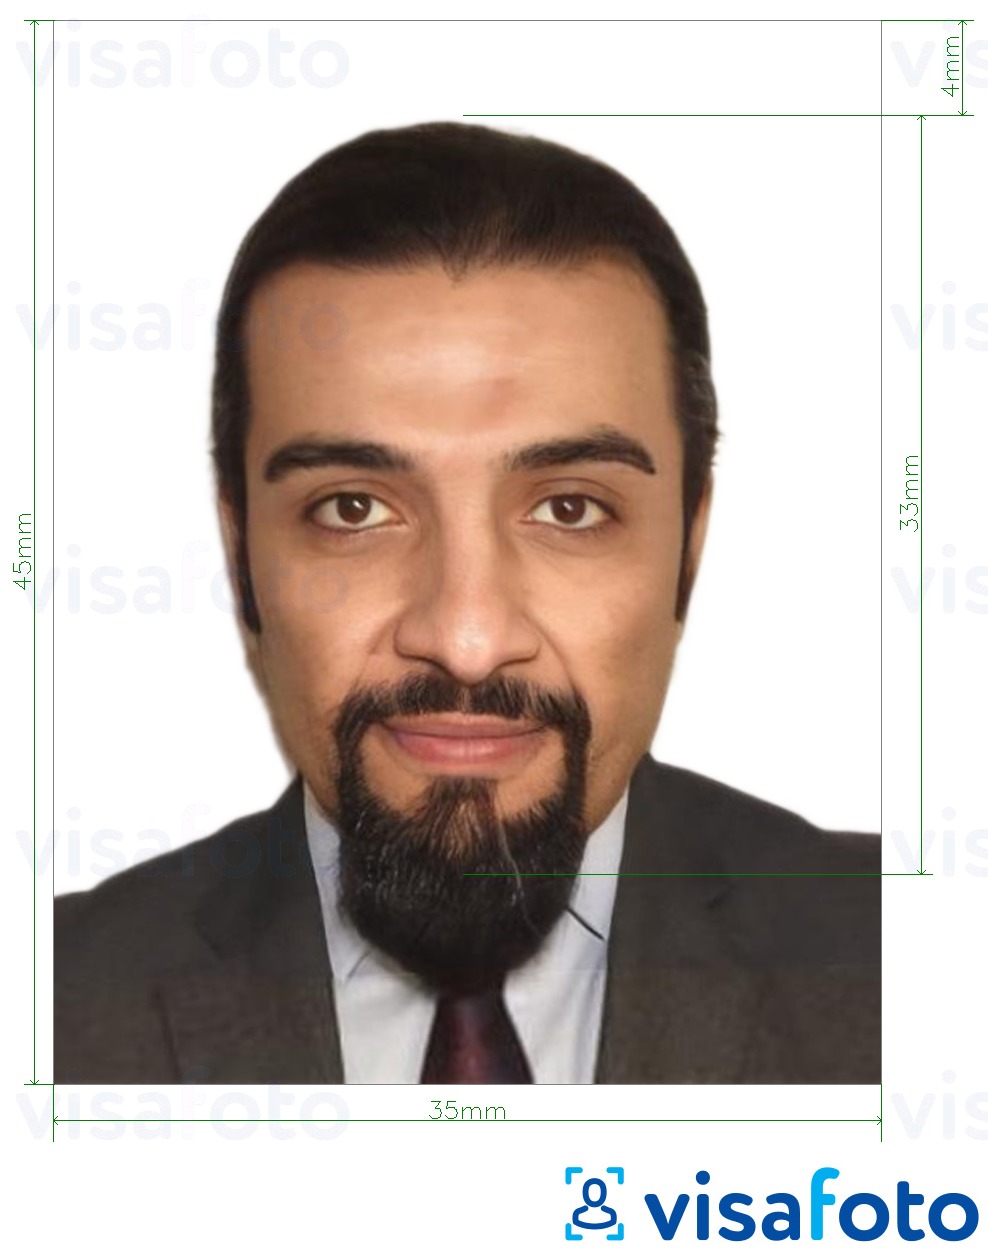 सटीक आकार विनिर्देश के साथ ट्यूनीशिया पासपोर्ट 3.5x4.5 सेमी (35x45 मिमी) के लिए तस्वीर का उदाहरण